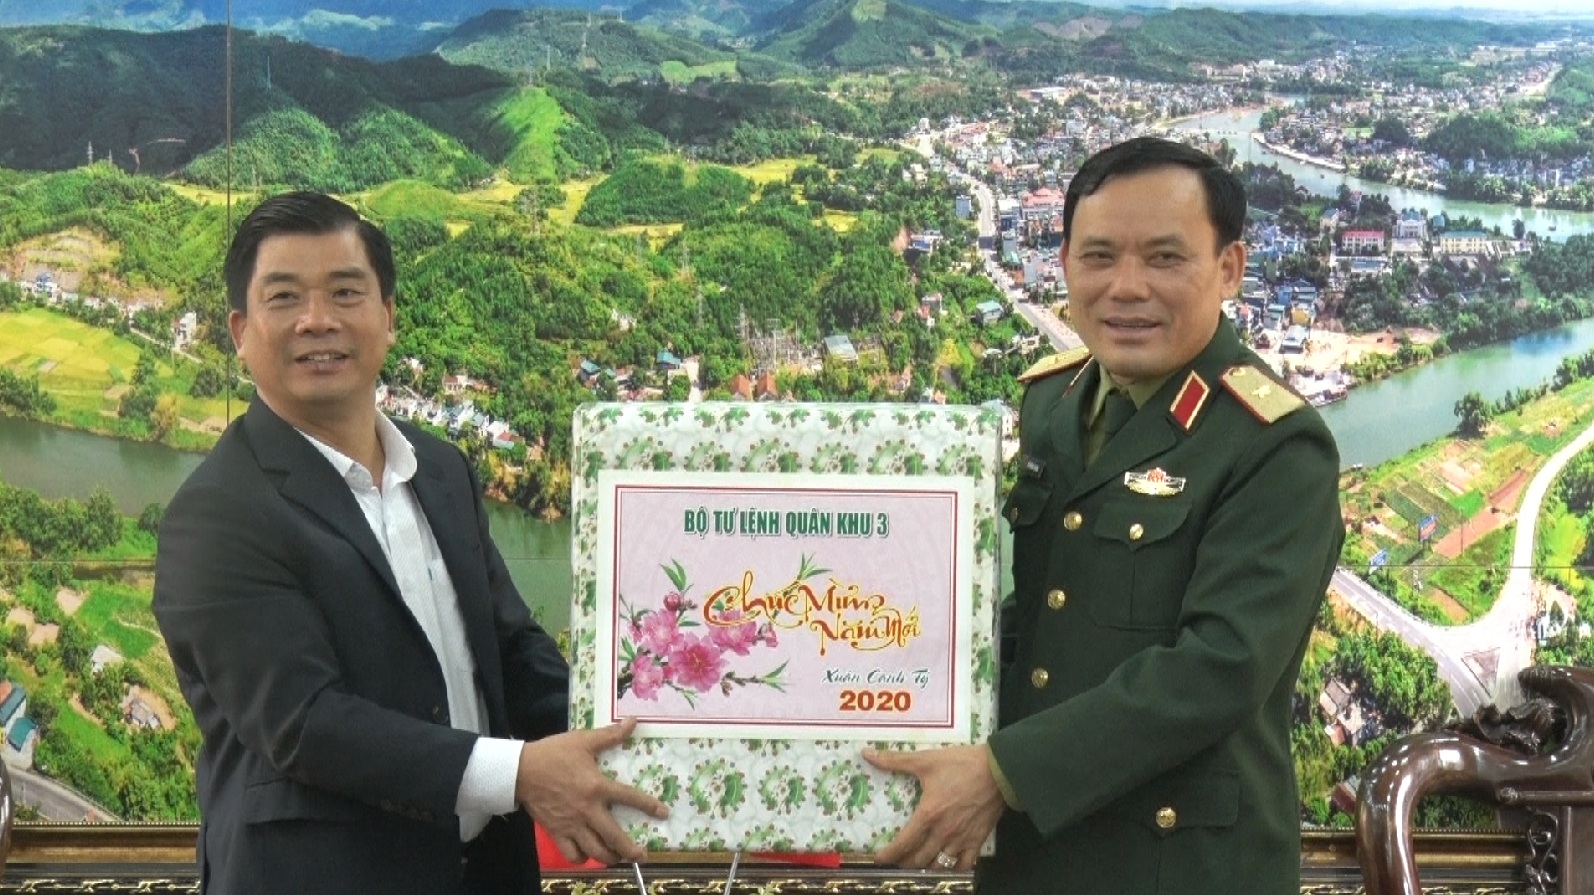 Thiếu tướng, Đỗ Phương Thuấn, Phó Tư lệnh Quân Khu 3 tặng quà tết cho lãnh đạo huyện Tiên Yên